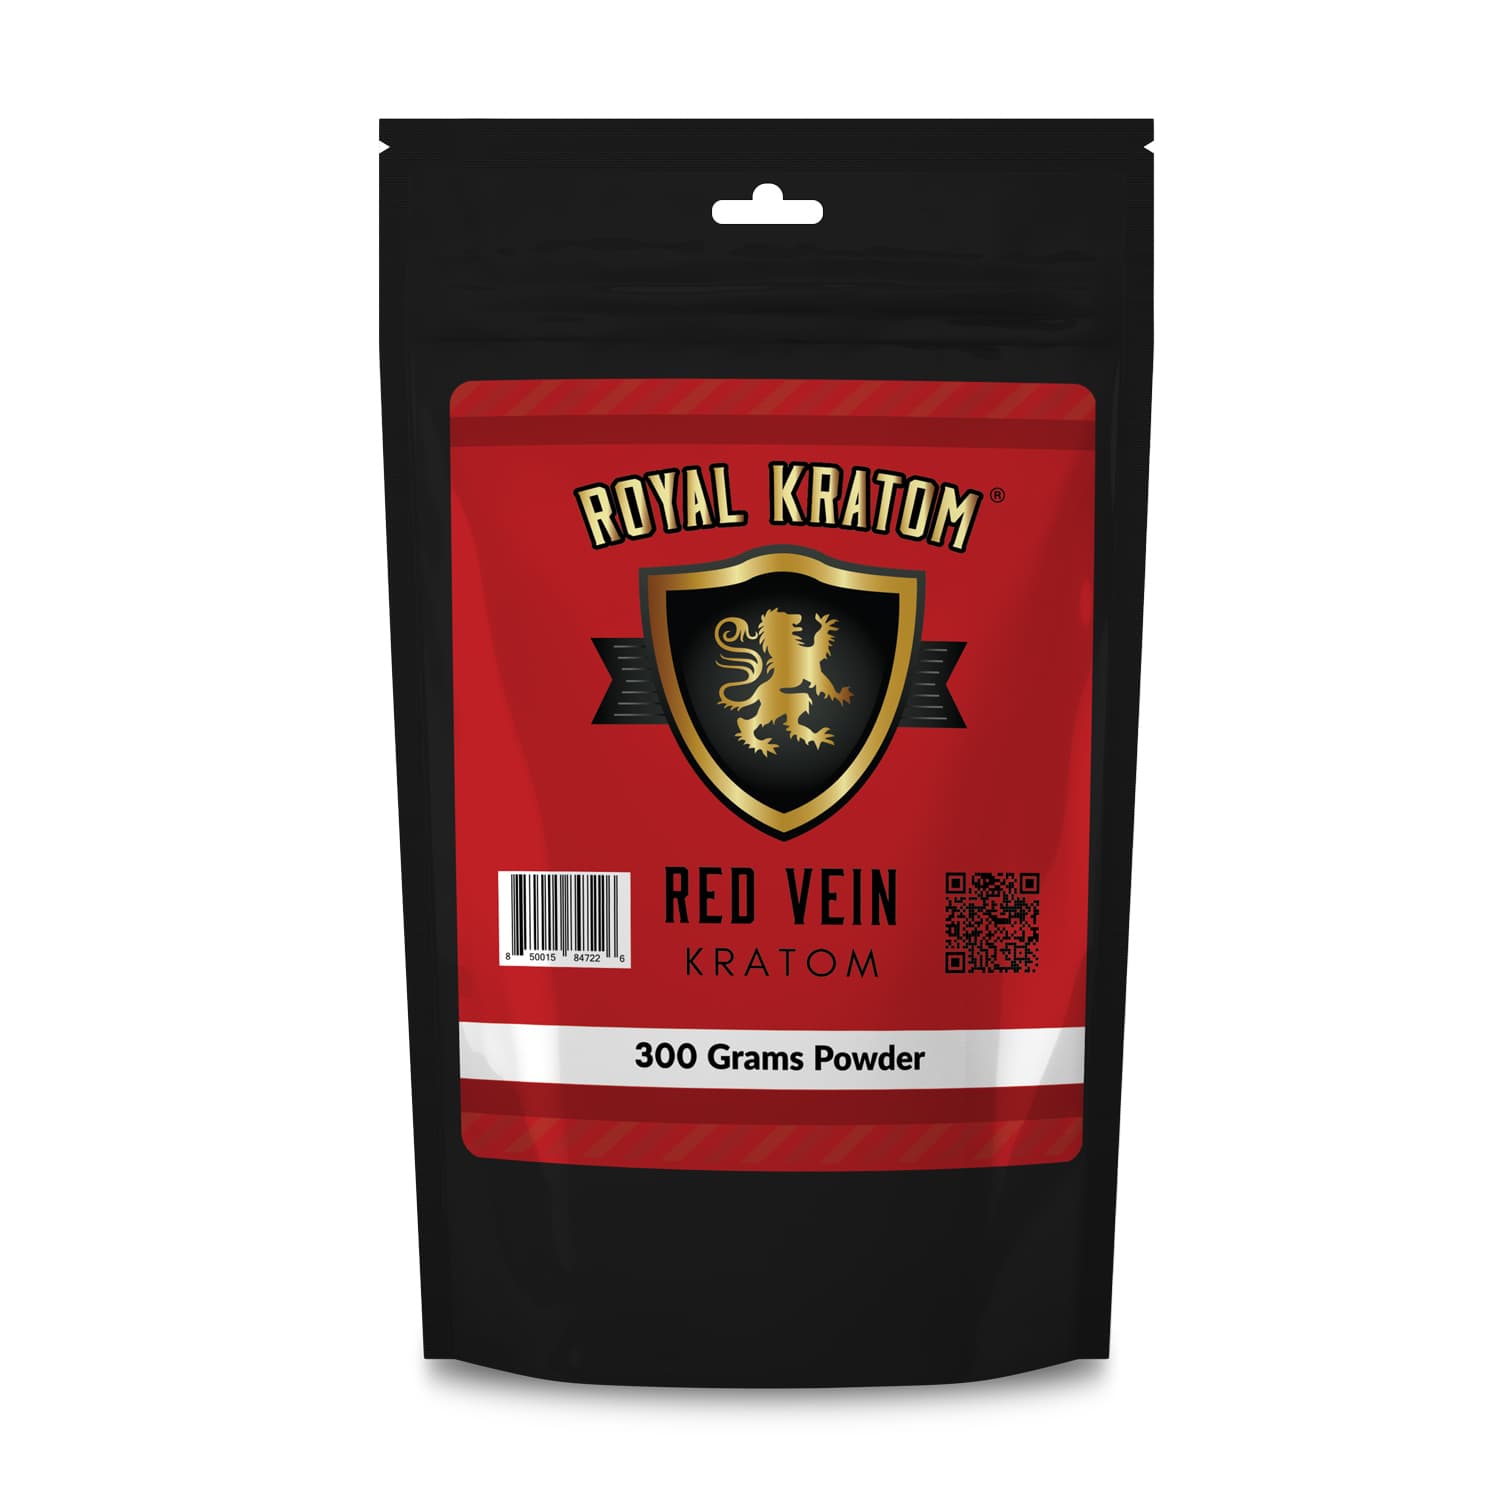 Royal Kratom Red Vein Kratom Powder 300 Grams front of package